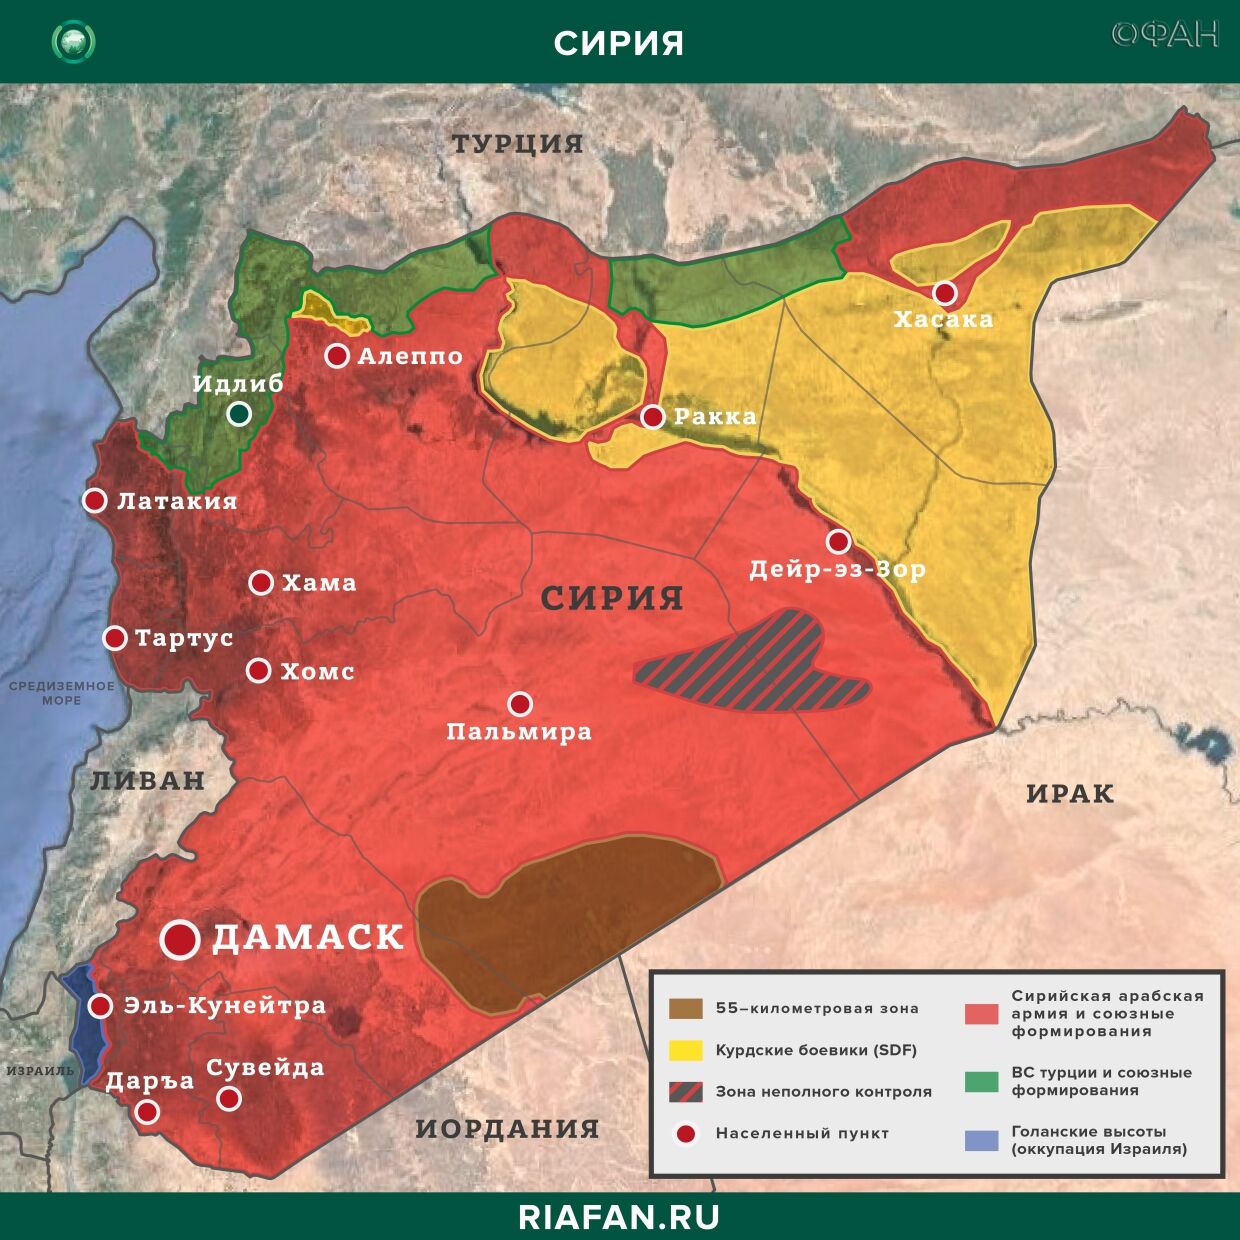 Noticias de Siria 24 Mayo 22.30: Турция перебросила 500 militantes a Libia, член SDF был застрелен террористами ИГ* в Дейр-эз-Зоре